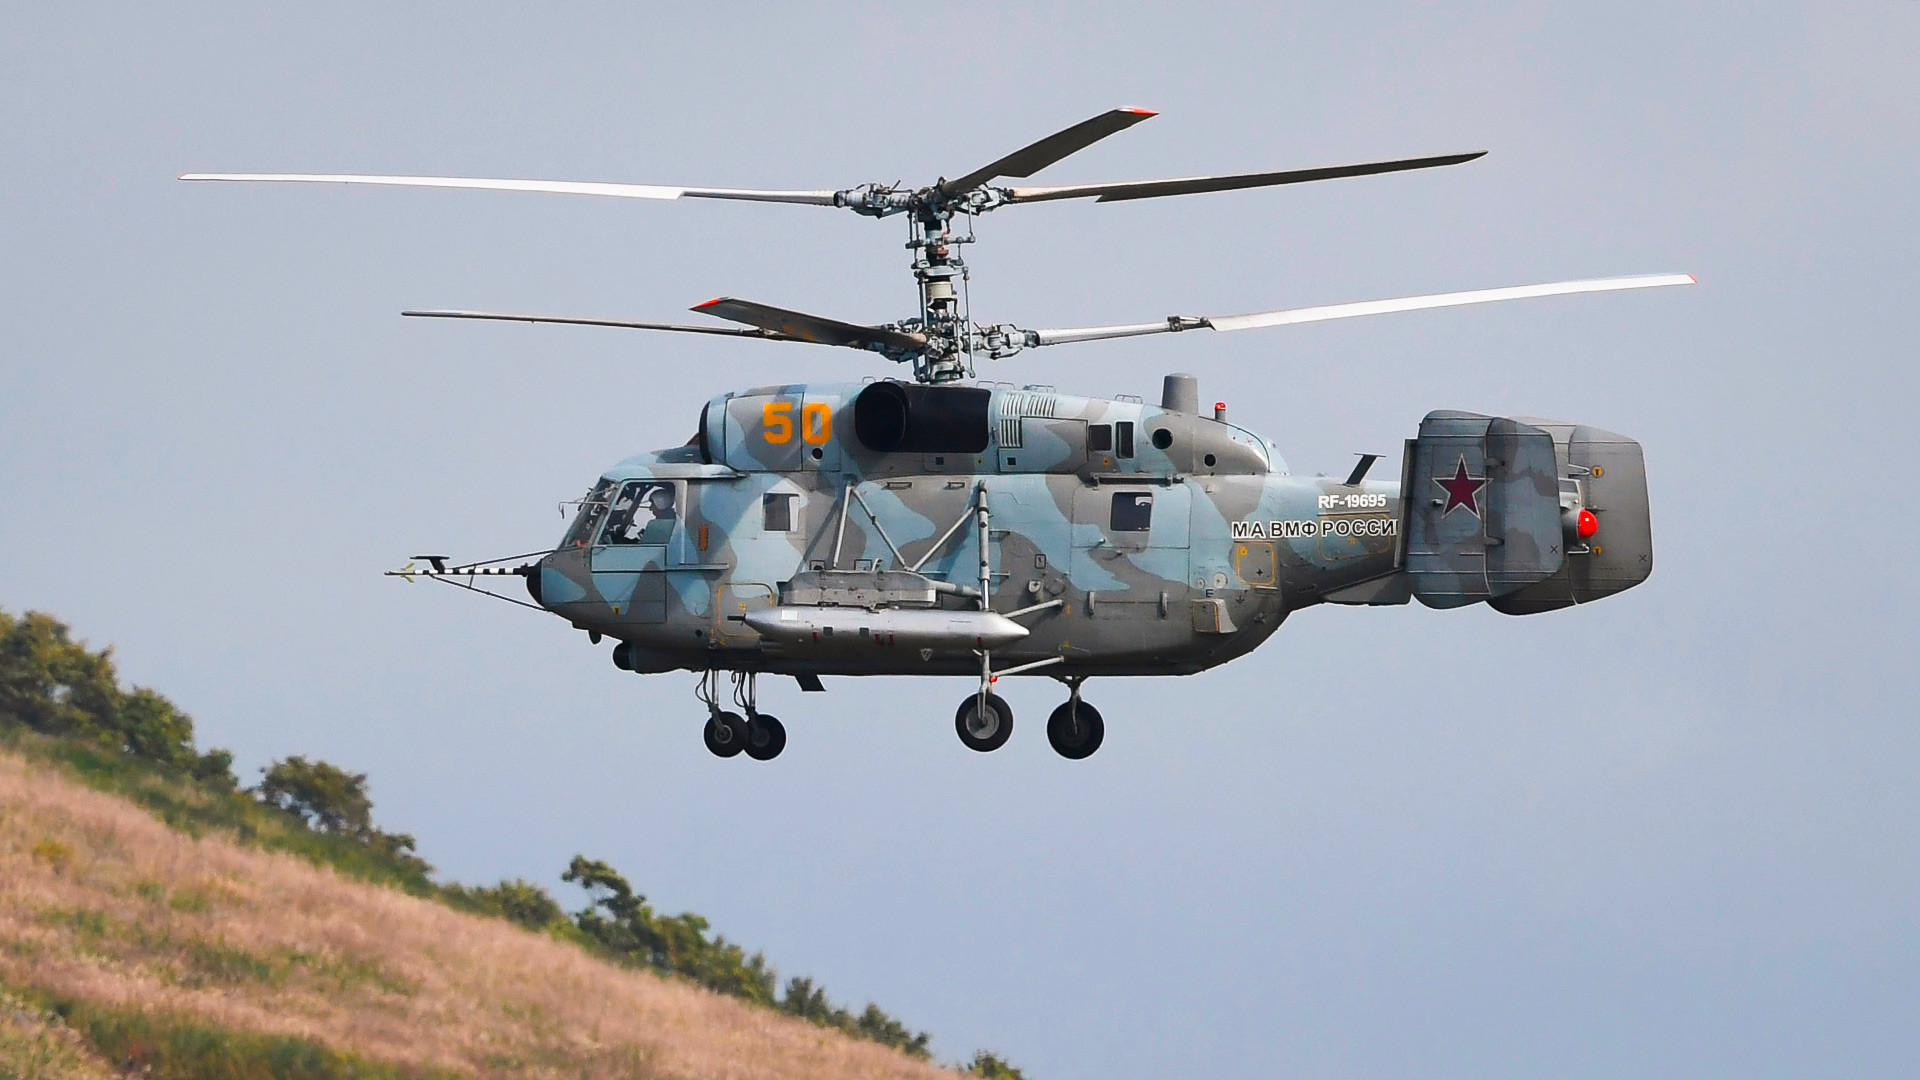 ロシアが極東に新型攻撃ヘリコプターを配備 - ロシア・ビヨンド